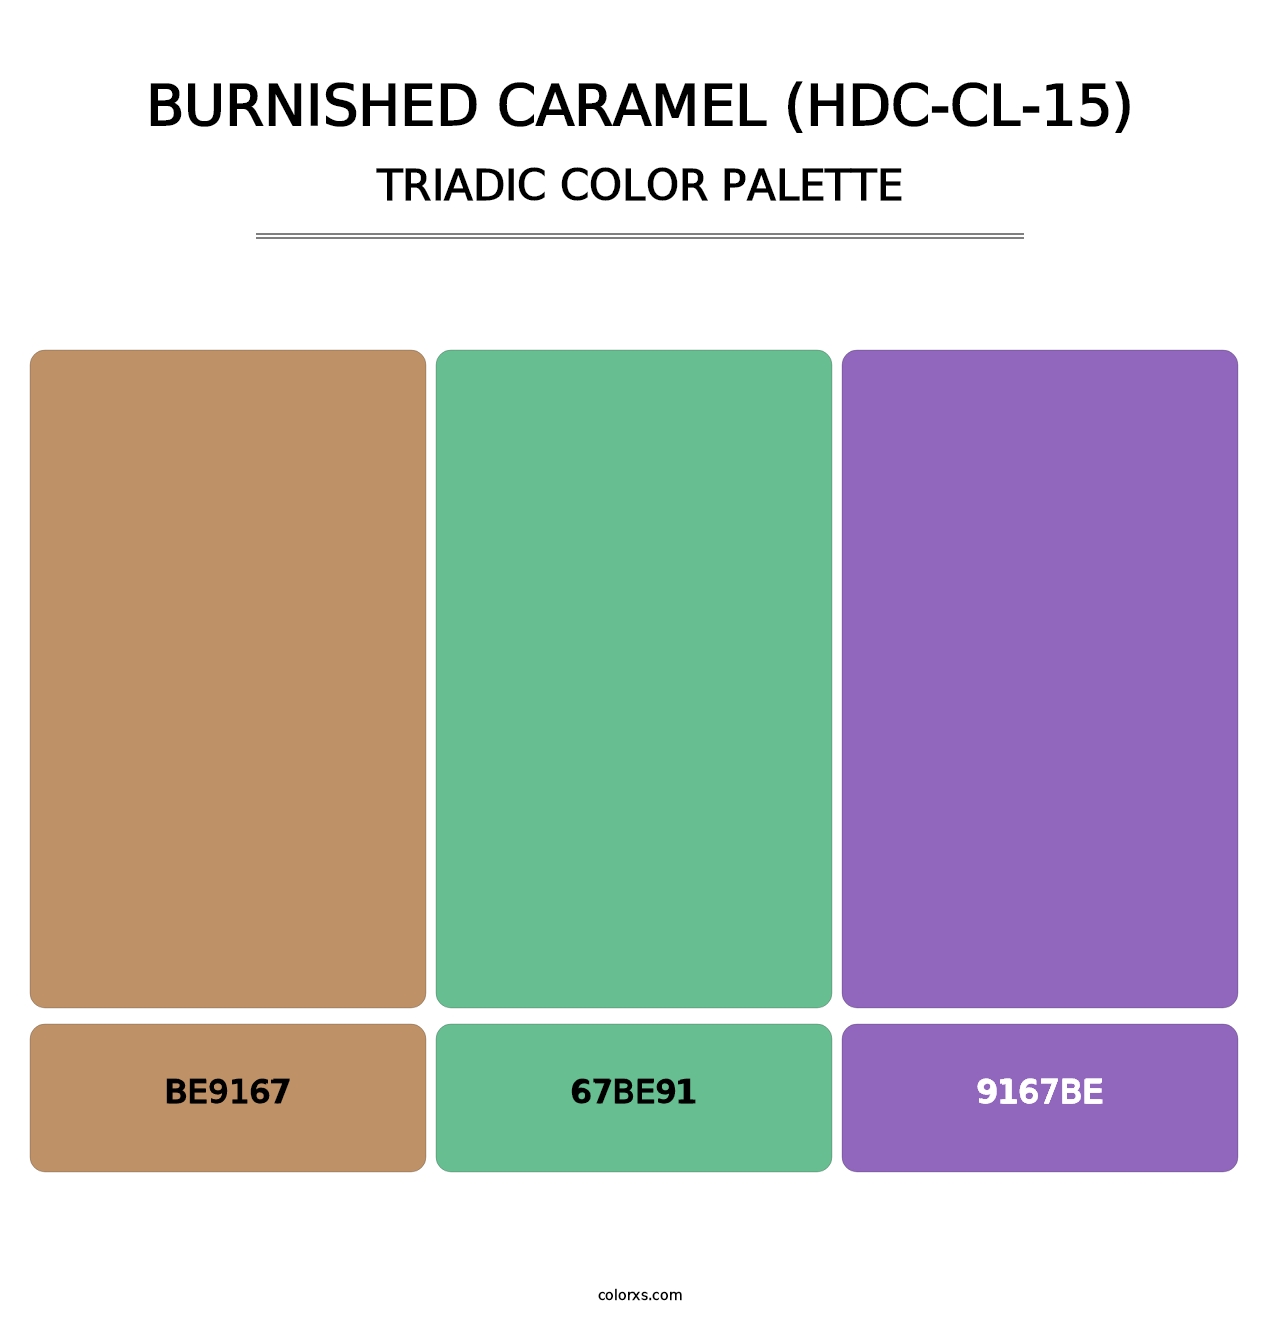 Burnished Caramel (HDC-CL-15) - Triadic Color Palette